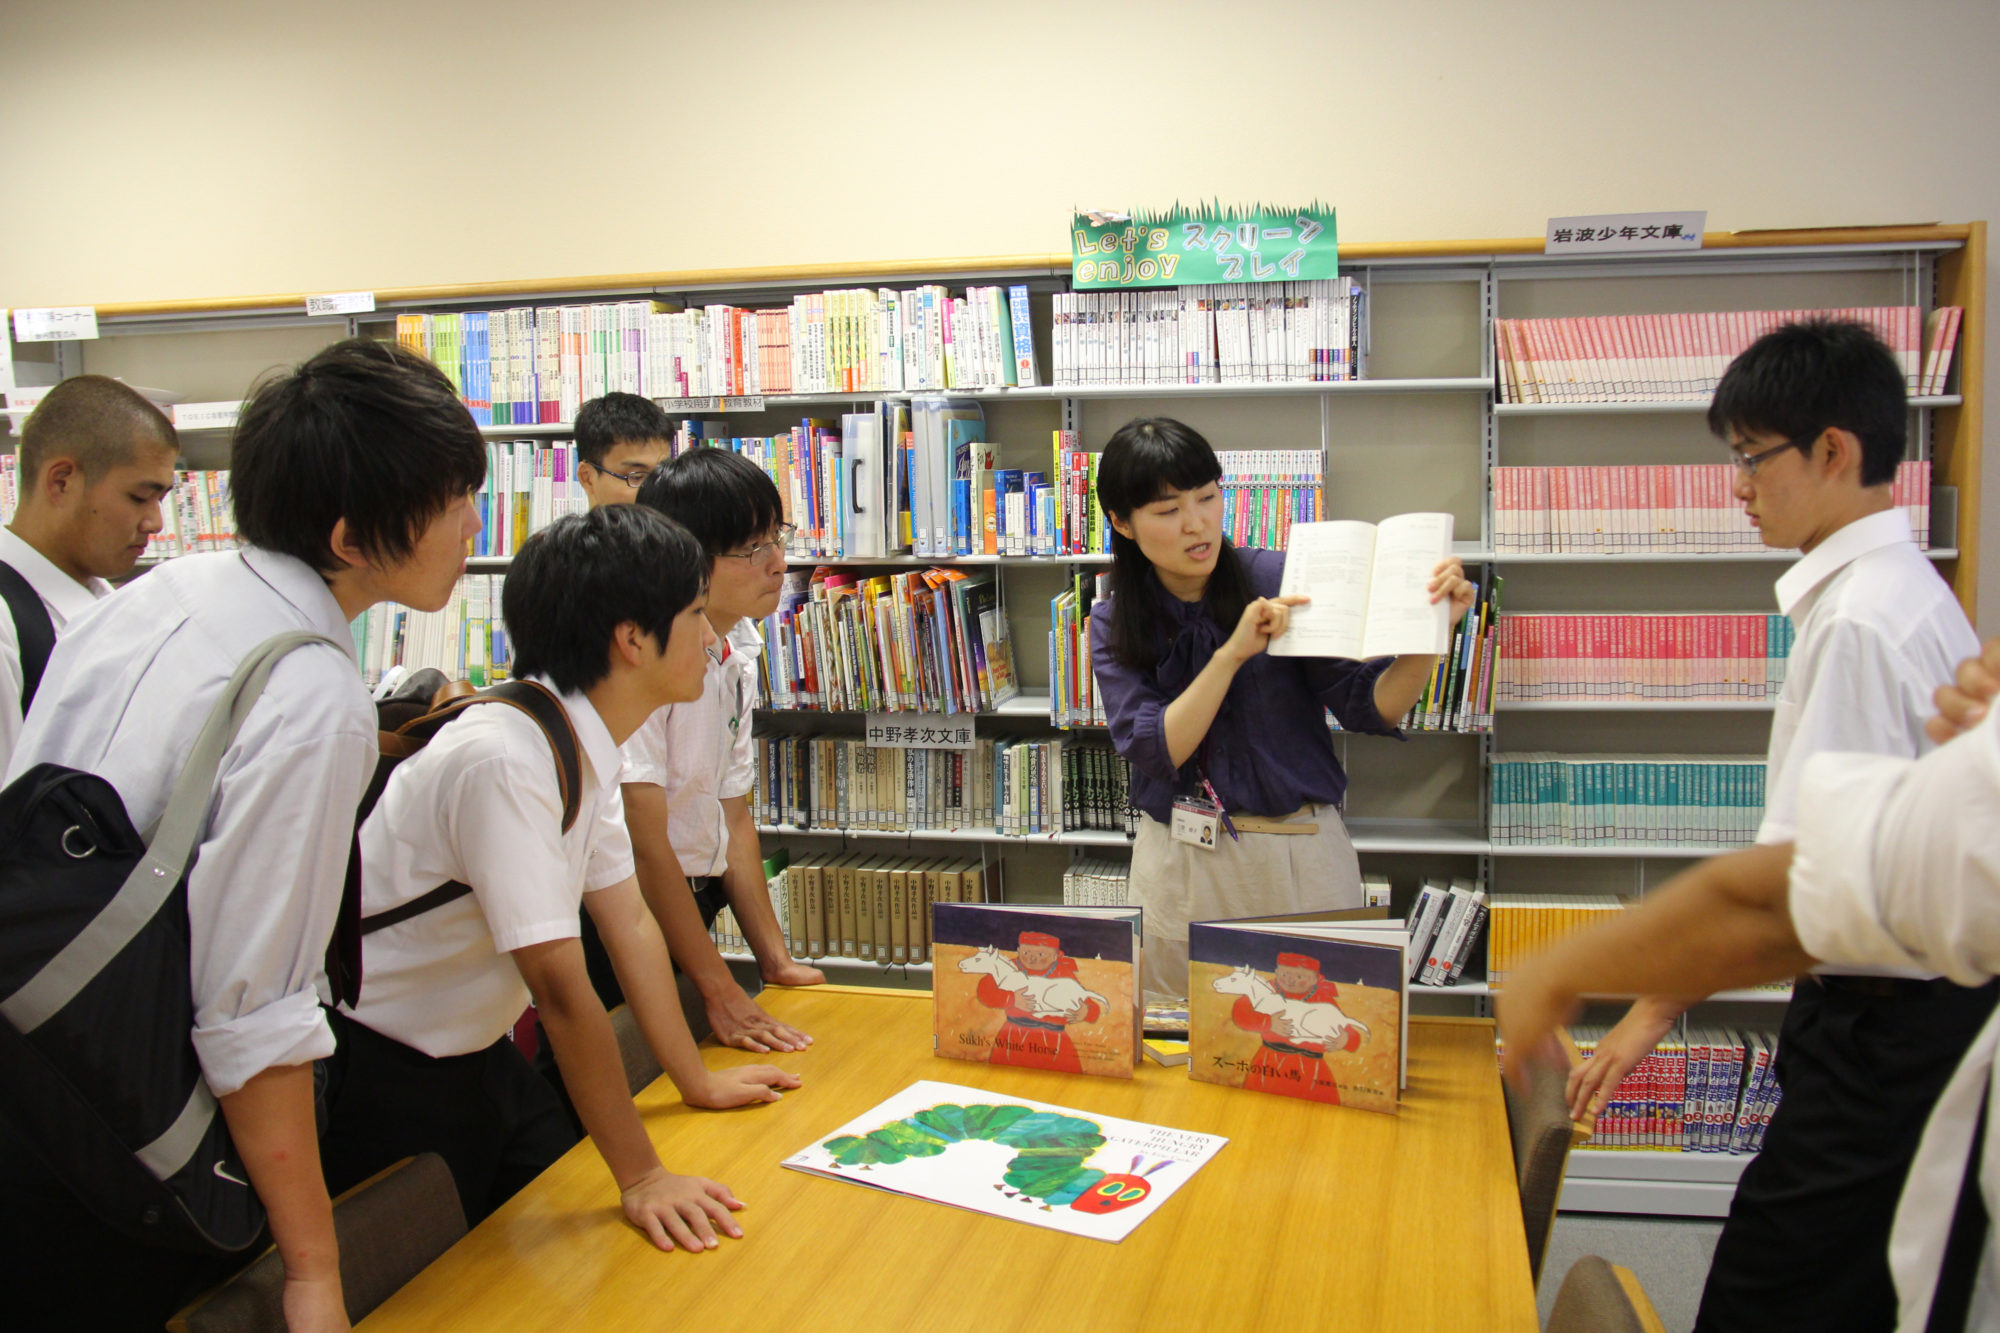 敬和学園高校生向けのオープンキャンパス「敬ONE」を開催しました